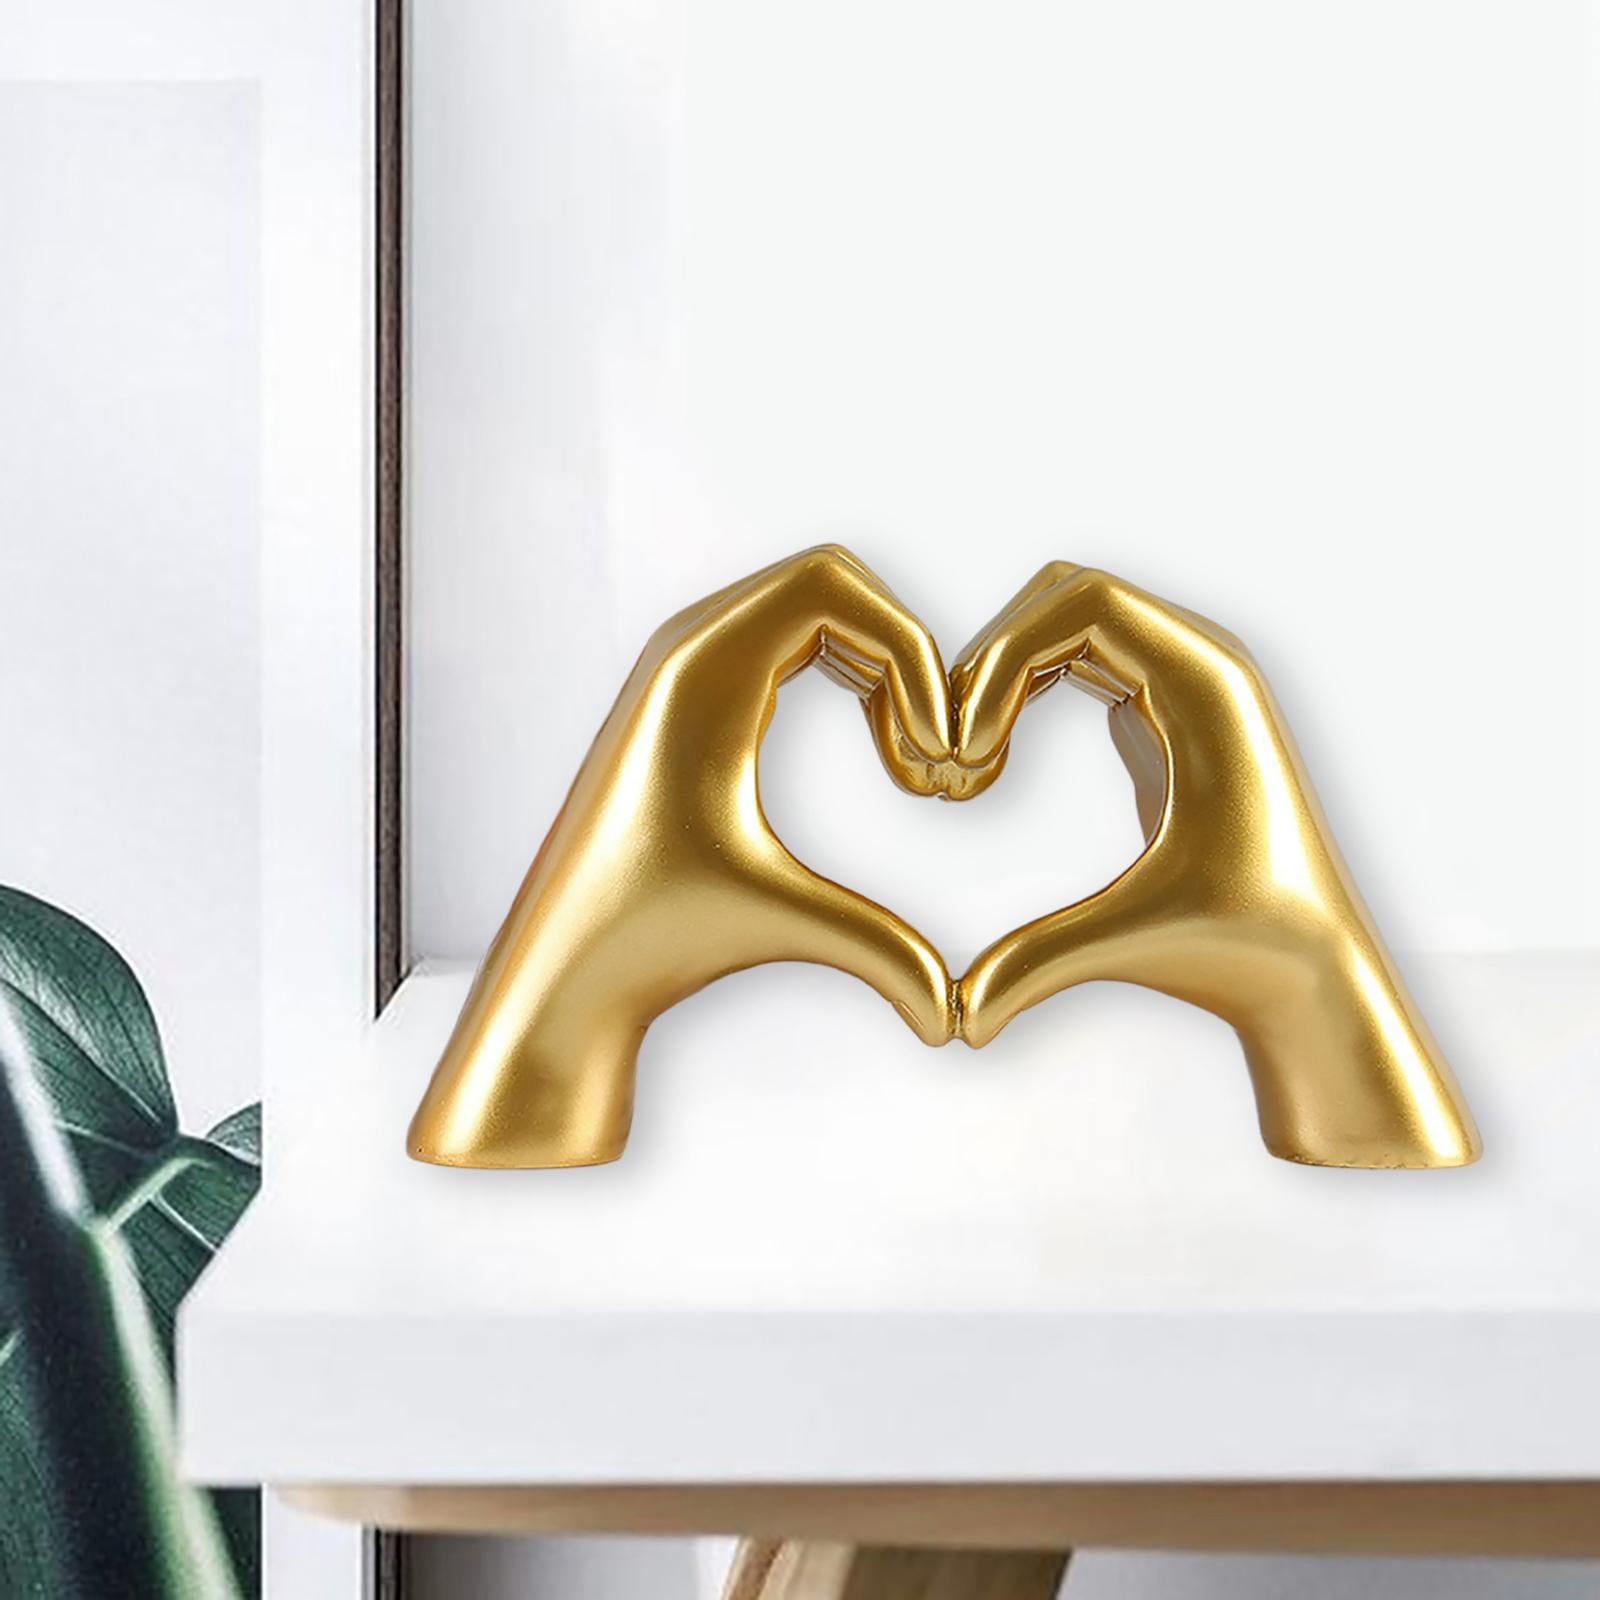  Golden Heart Hands Sculpture,Hand Gesture Statue Decor Creative  Gift,Love You Heart Figurine Ornament Modern Art Sculpture Home Decor,Gold  : Home & Kitchen